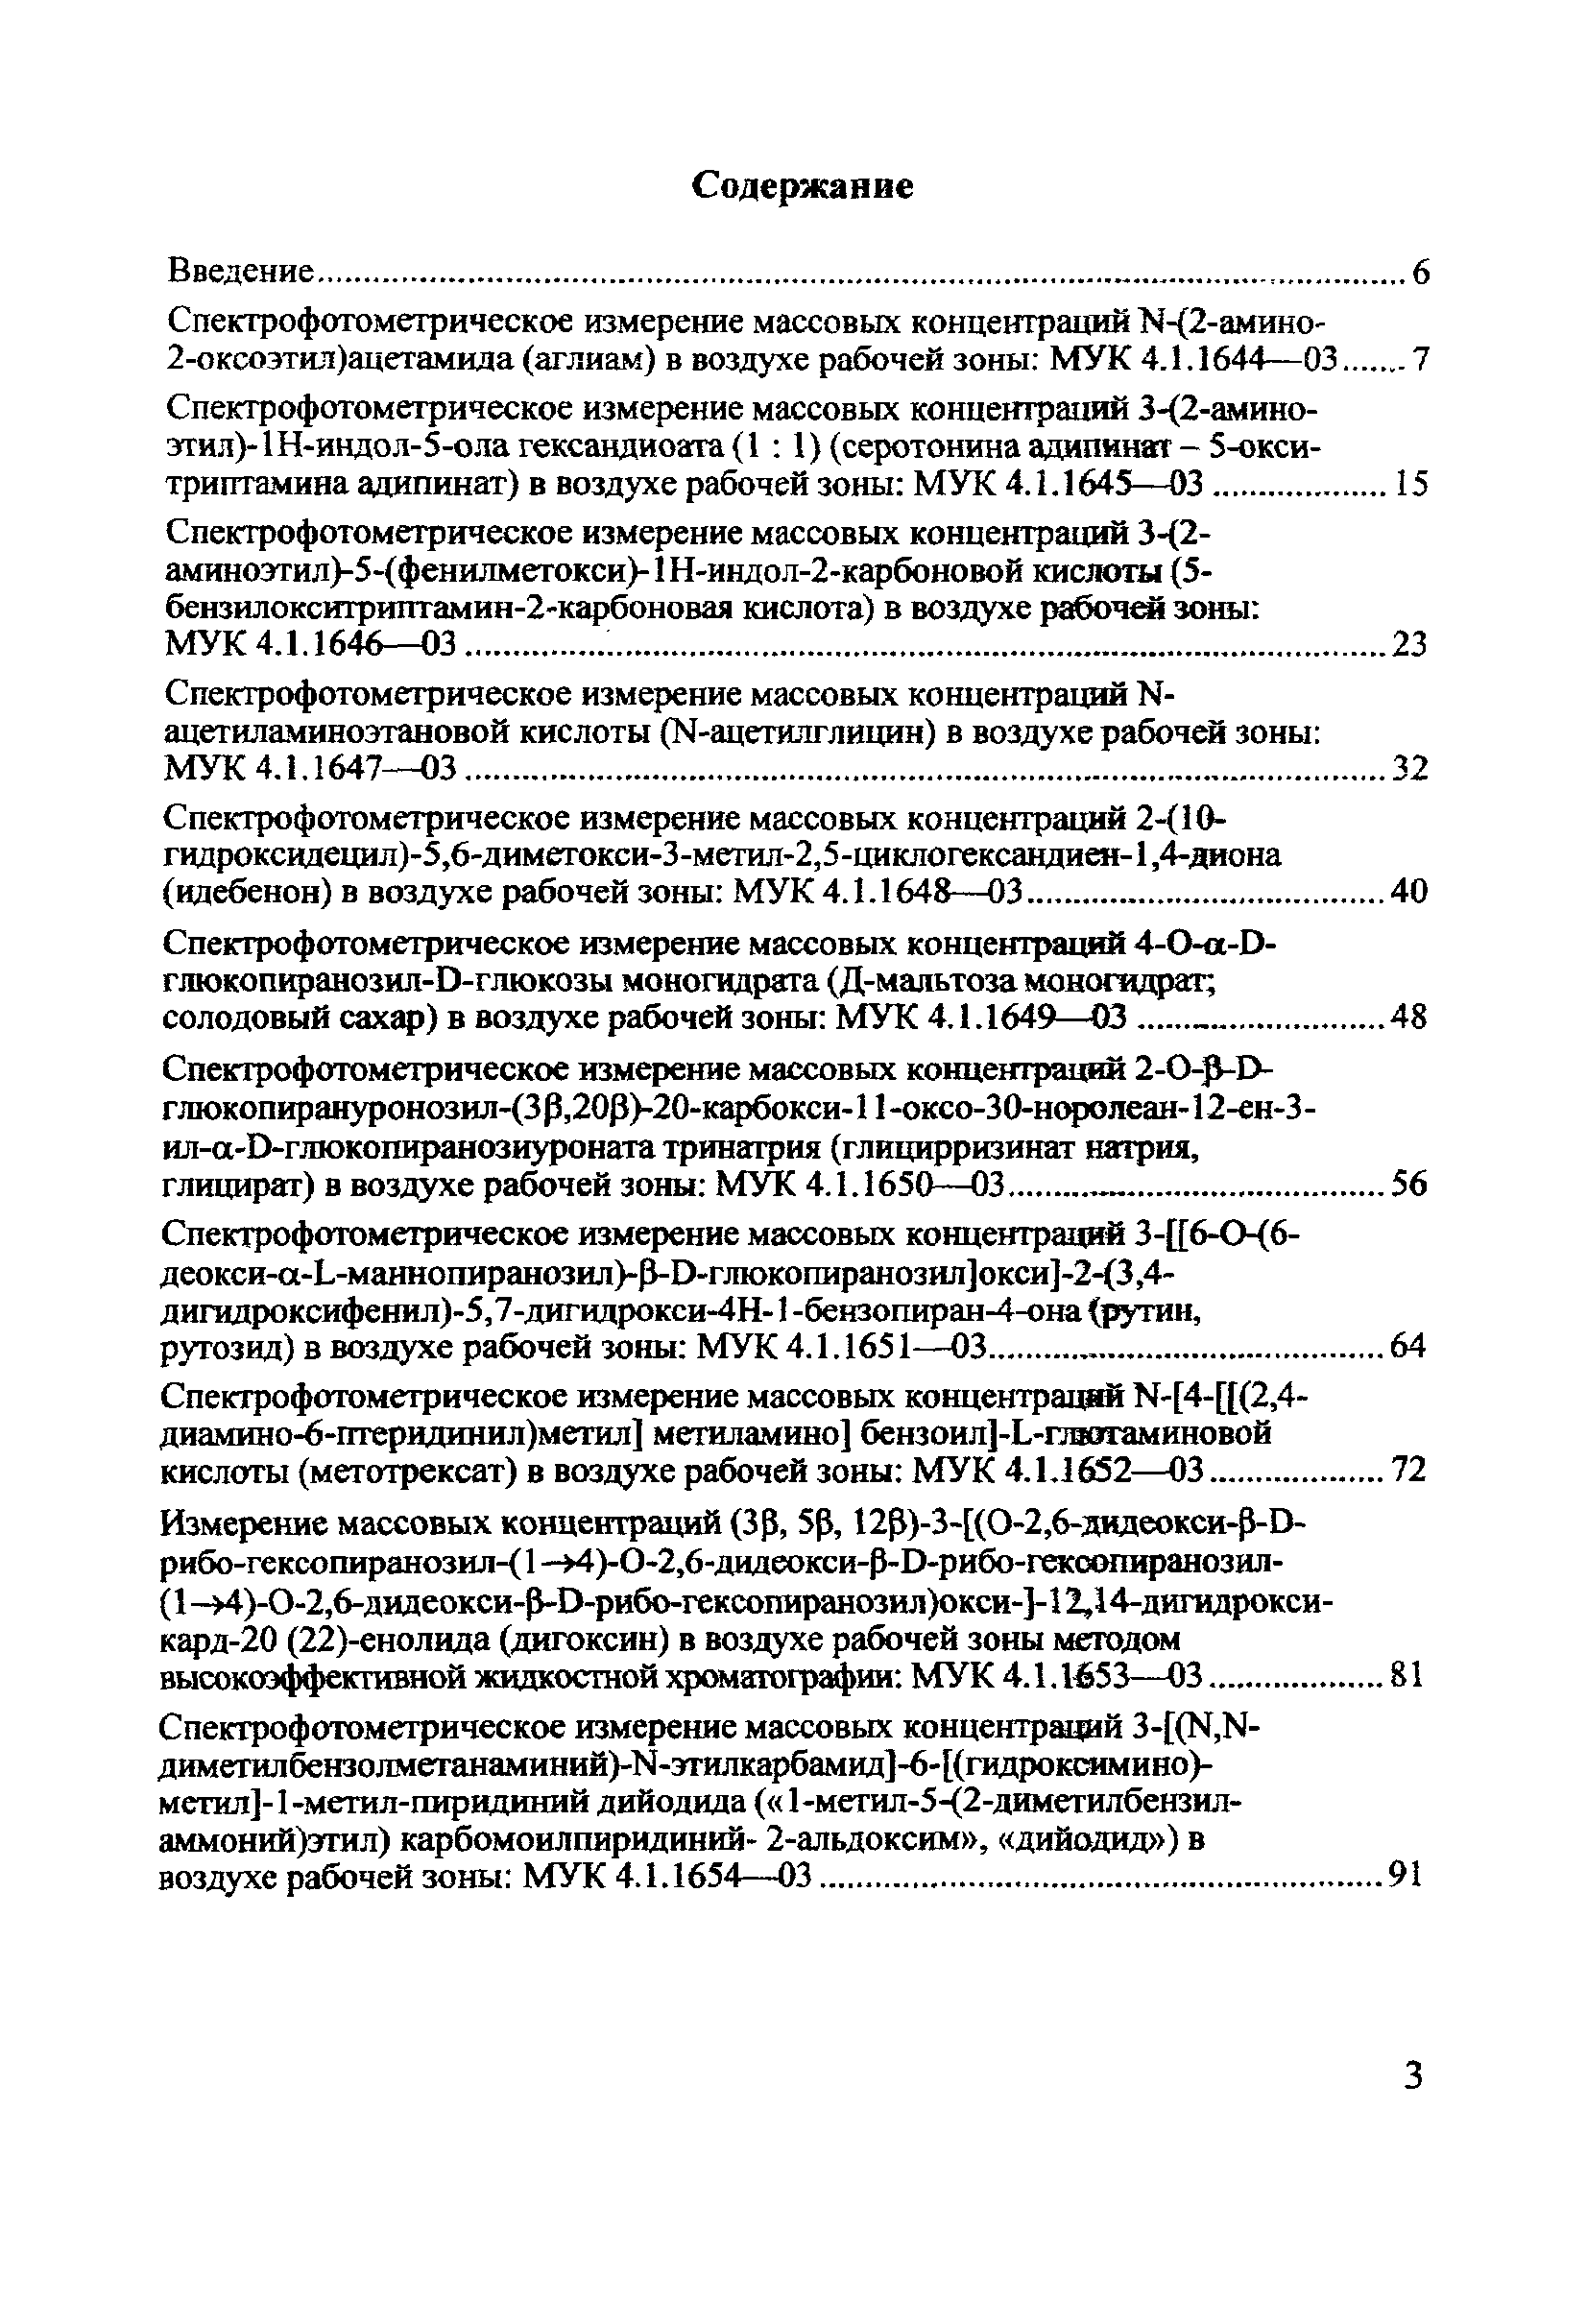 МУК 4.1.1651-03